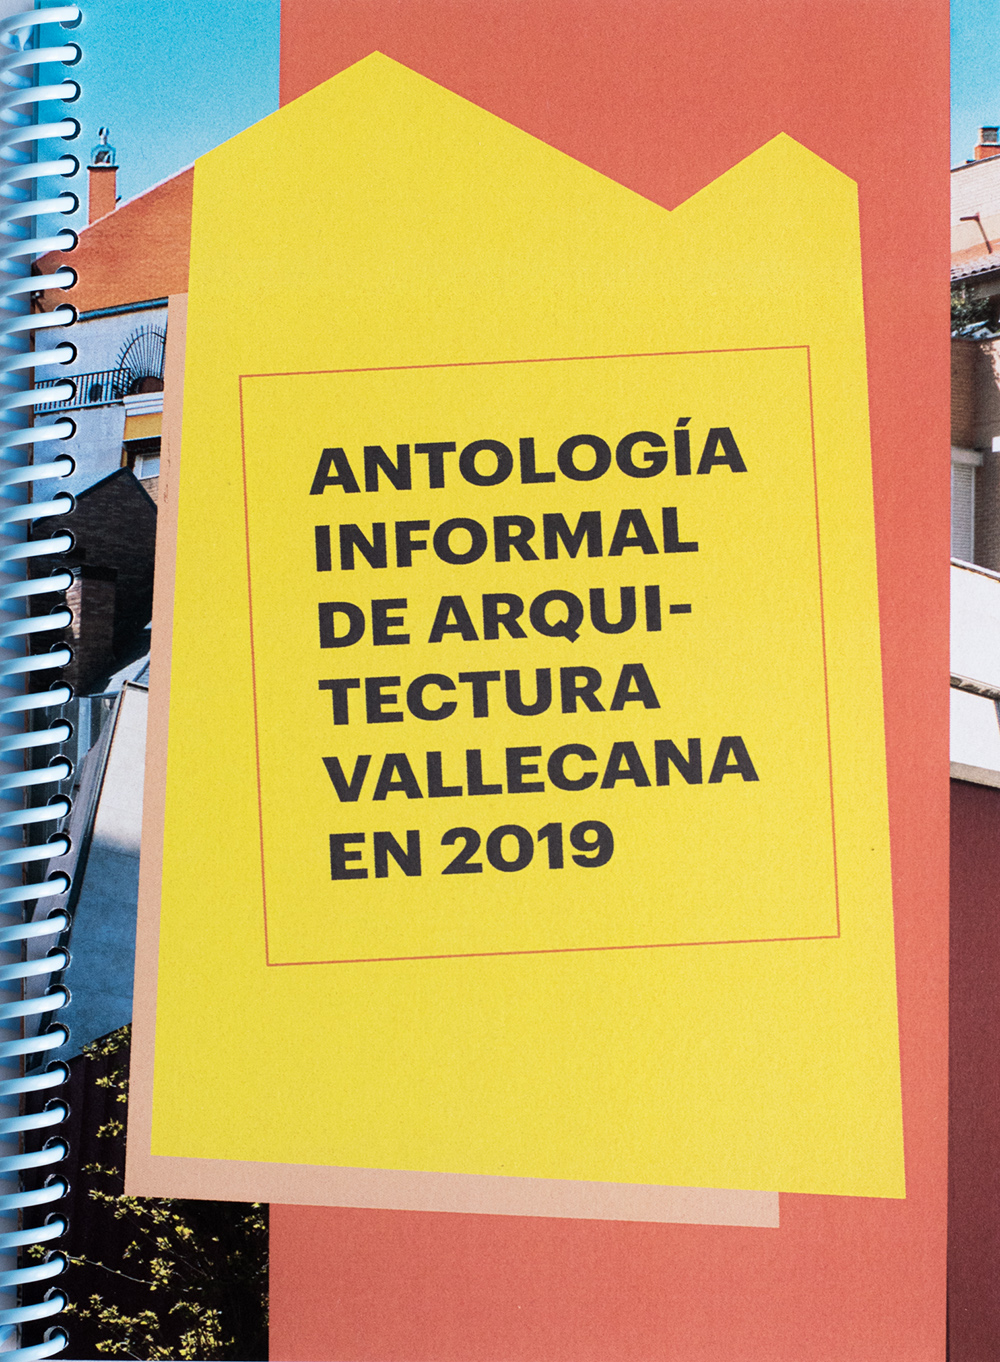 Antología informal de arquitectura vallecana en 2019